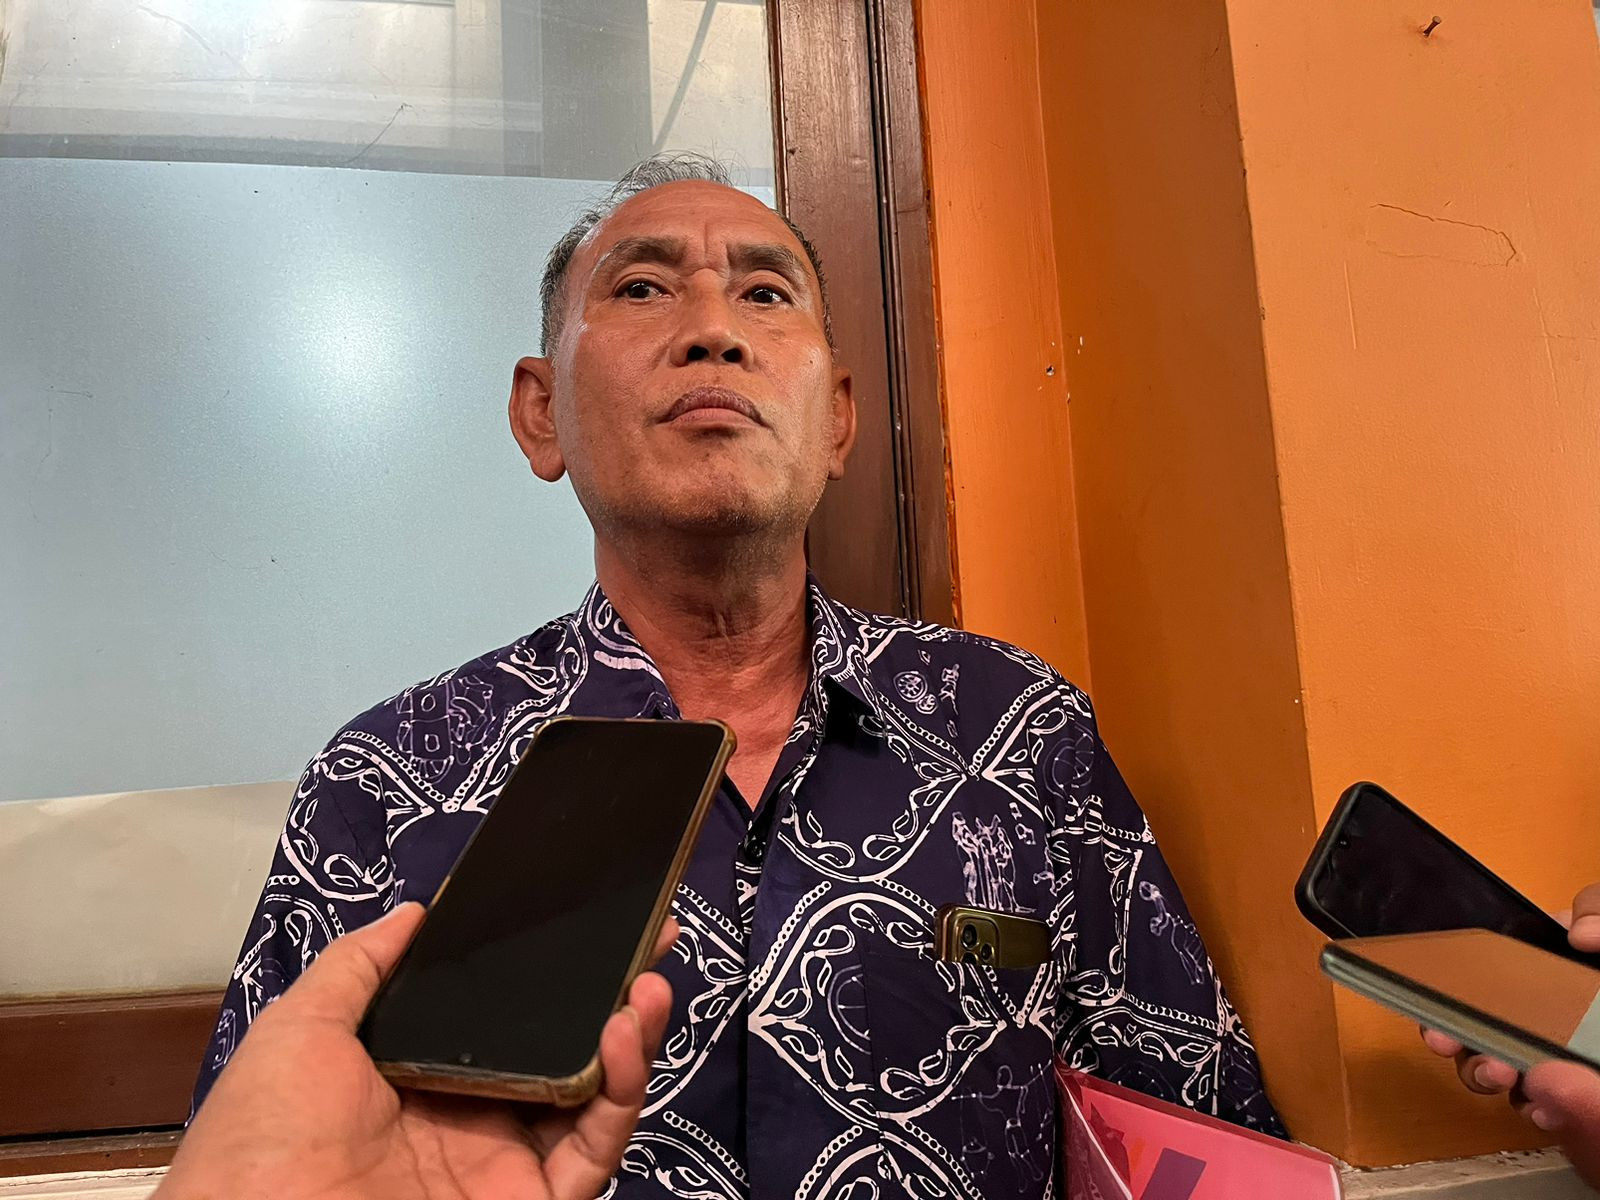 Imbas Kasus Subang, Dispendik Surabaya Larang Sekolah Studi Tur Luar Kota - JPNN.com Jatim